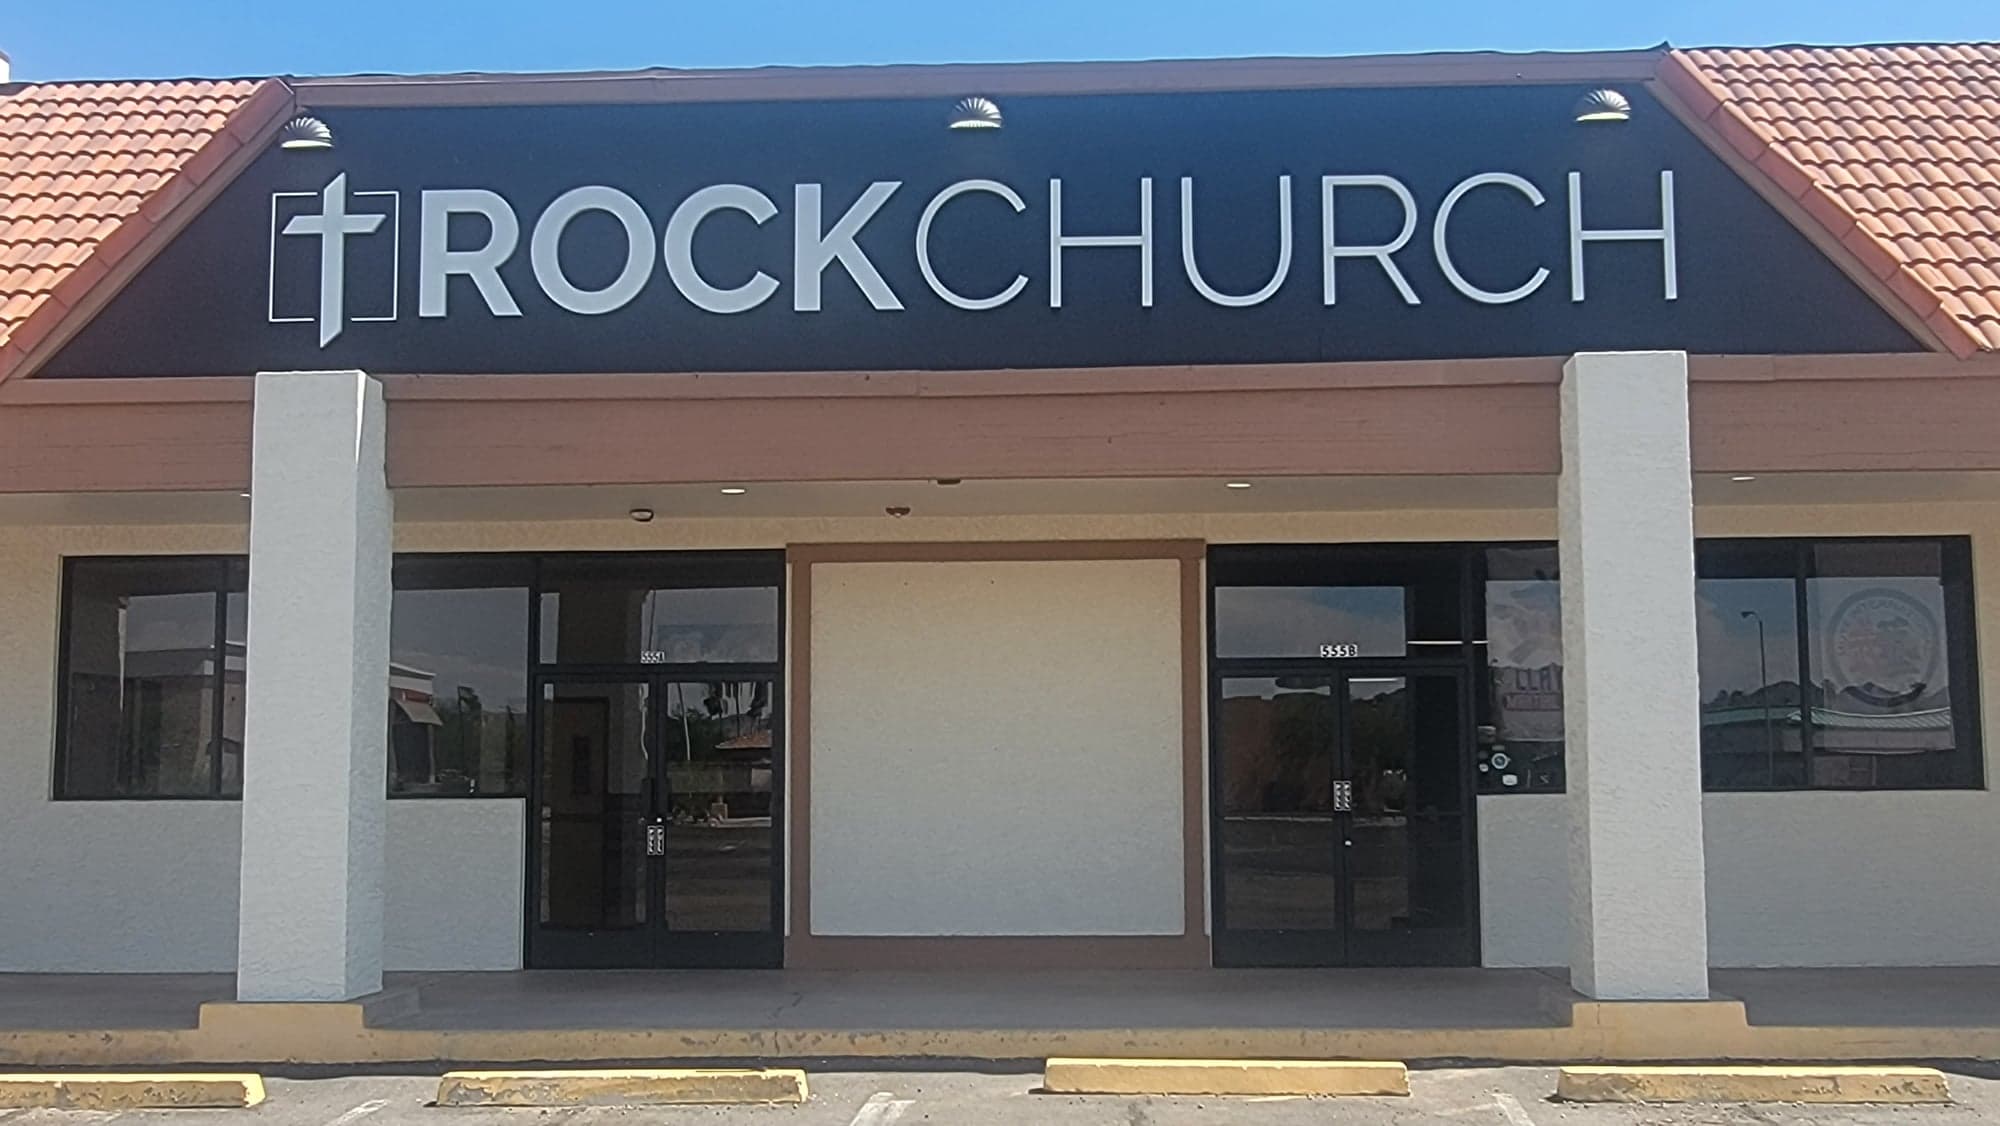 Home - The Rock Church